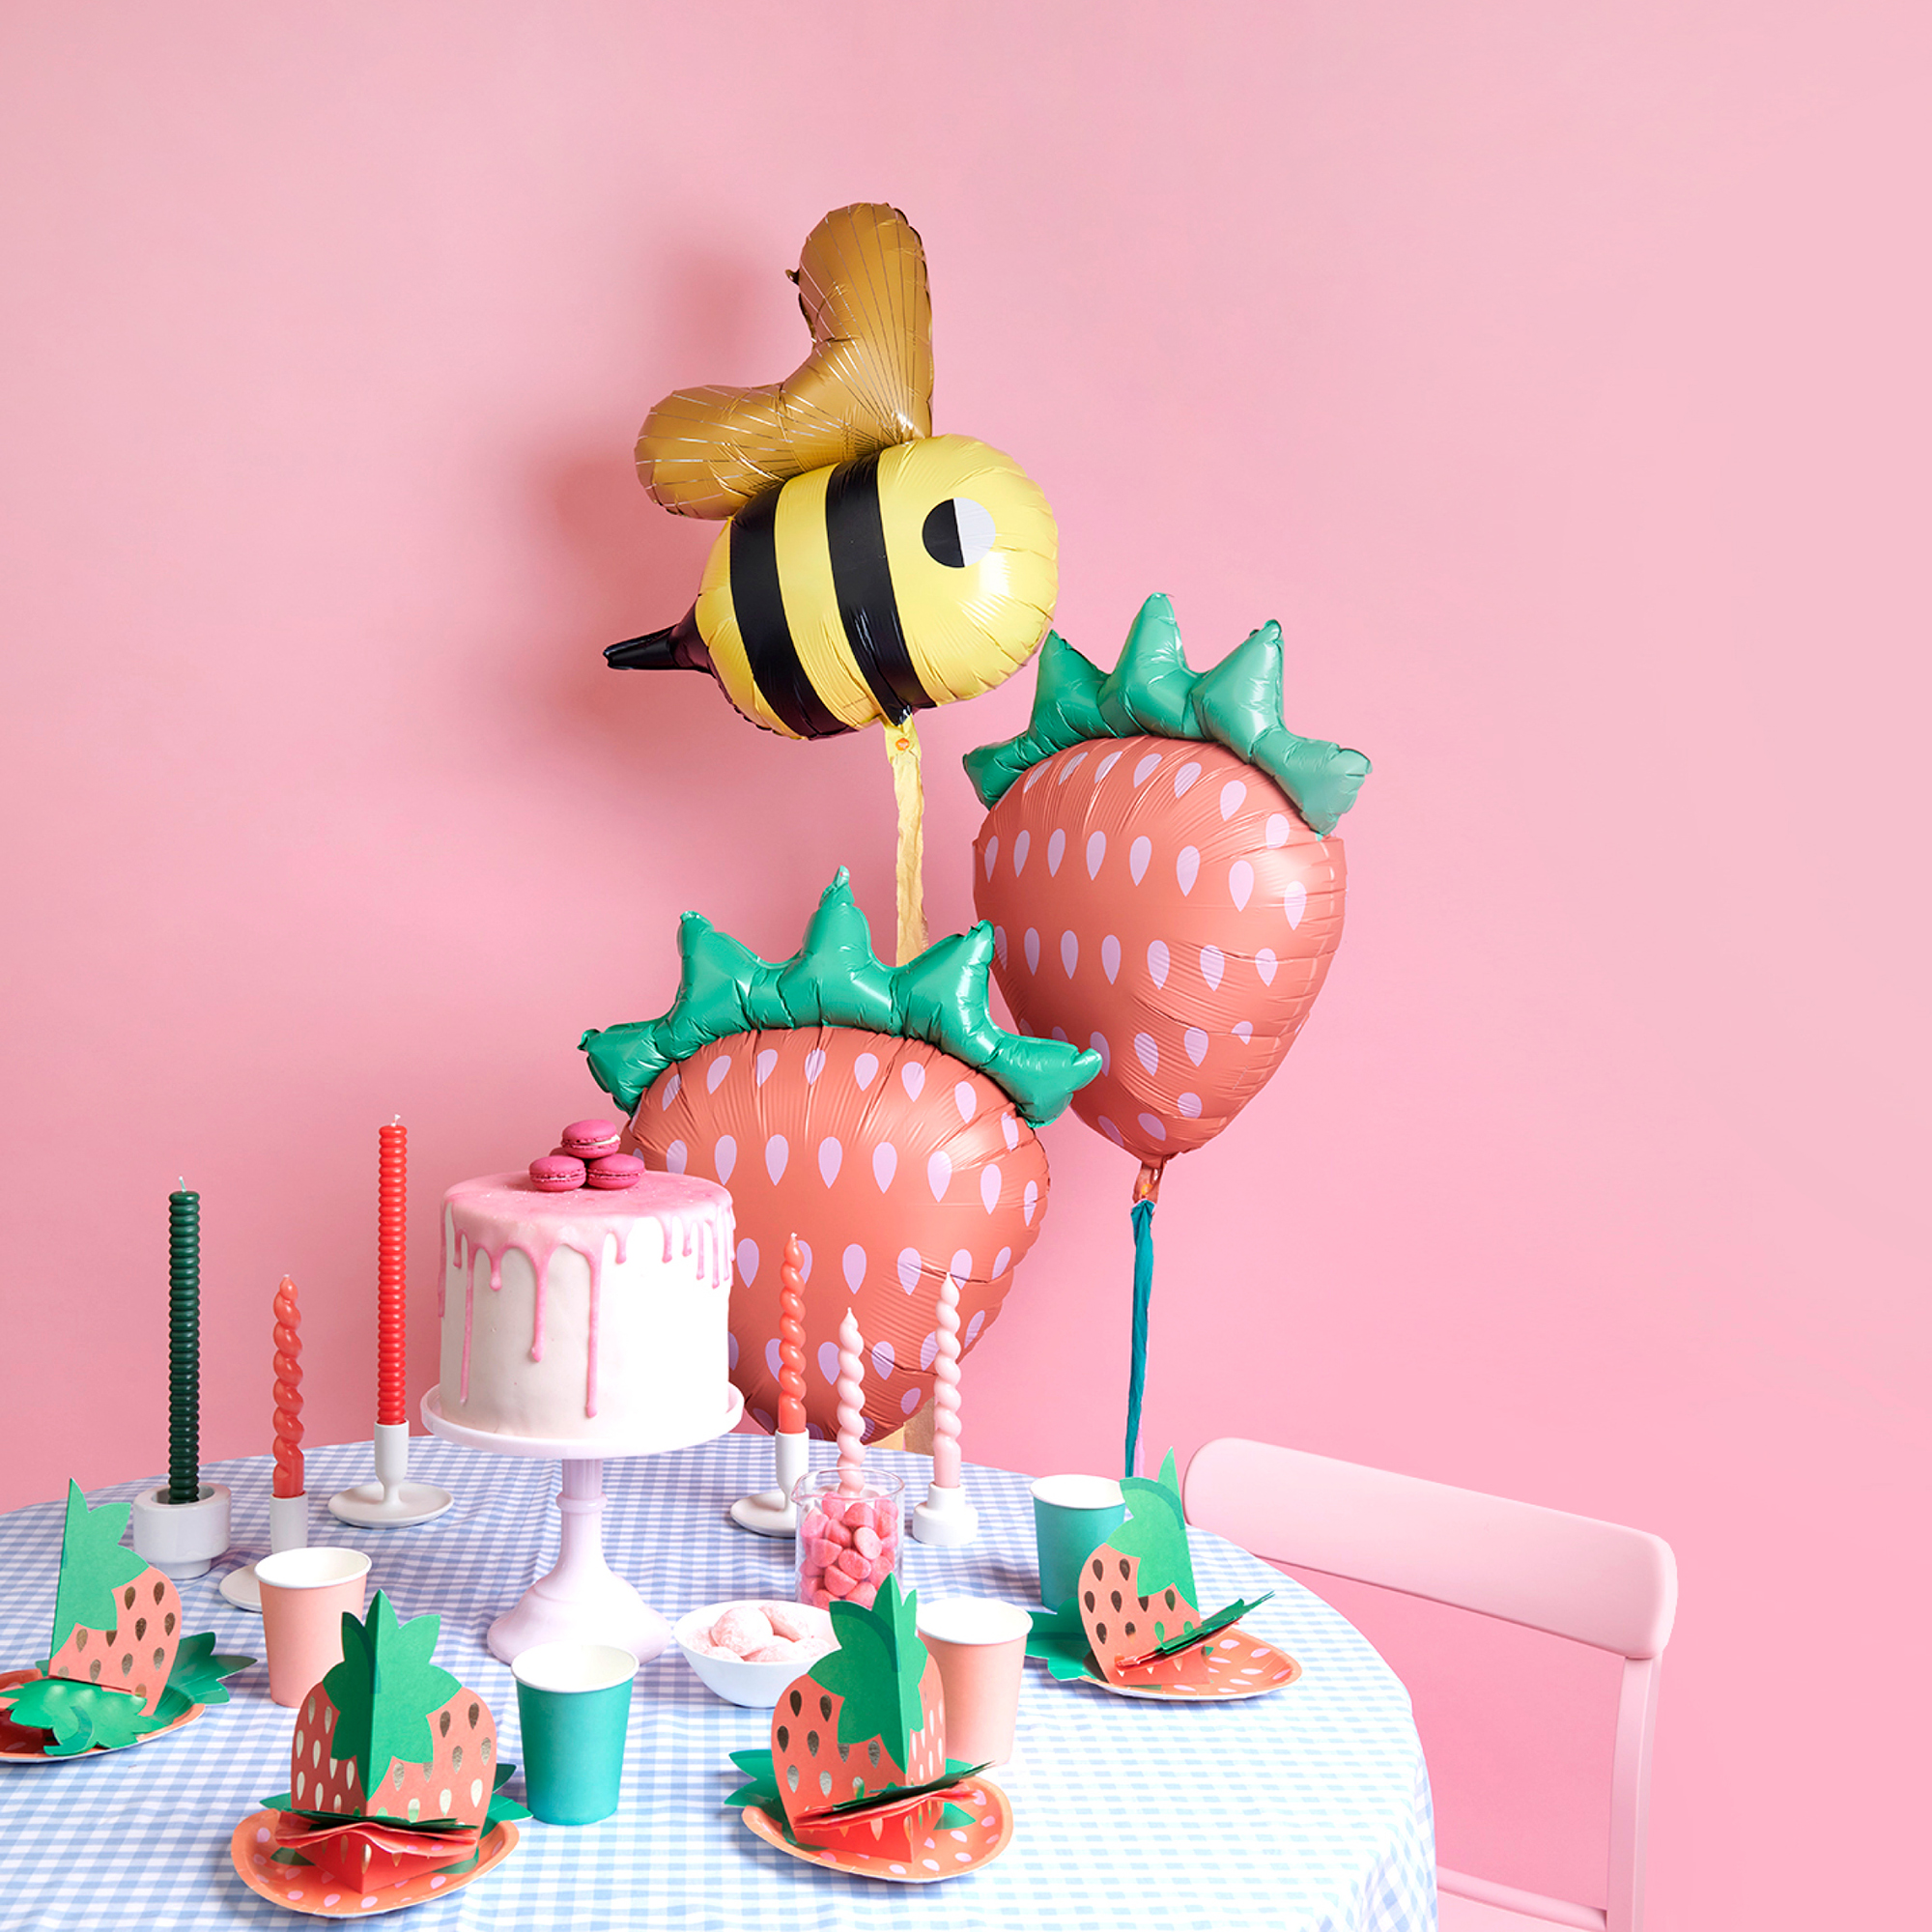 Erdbeer Ballons und Tischdeko